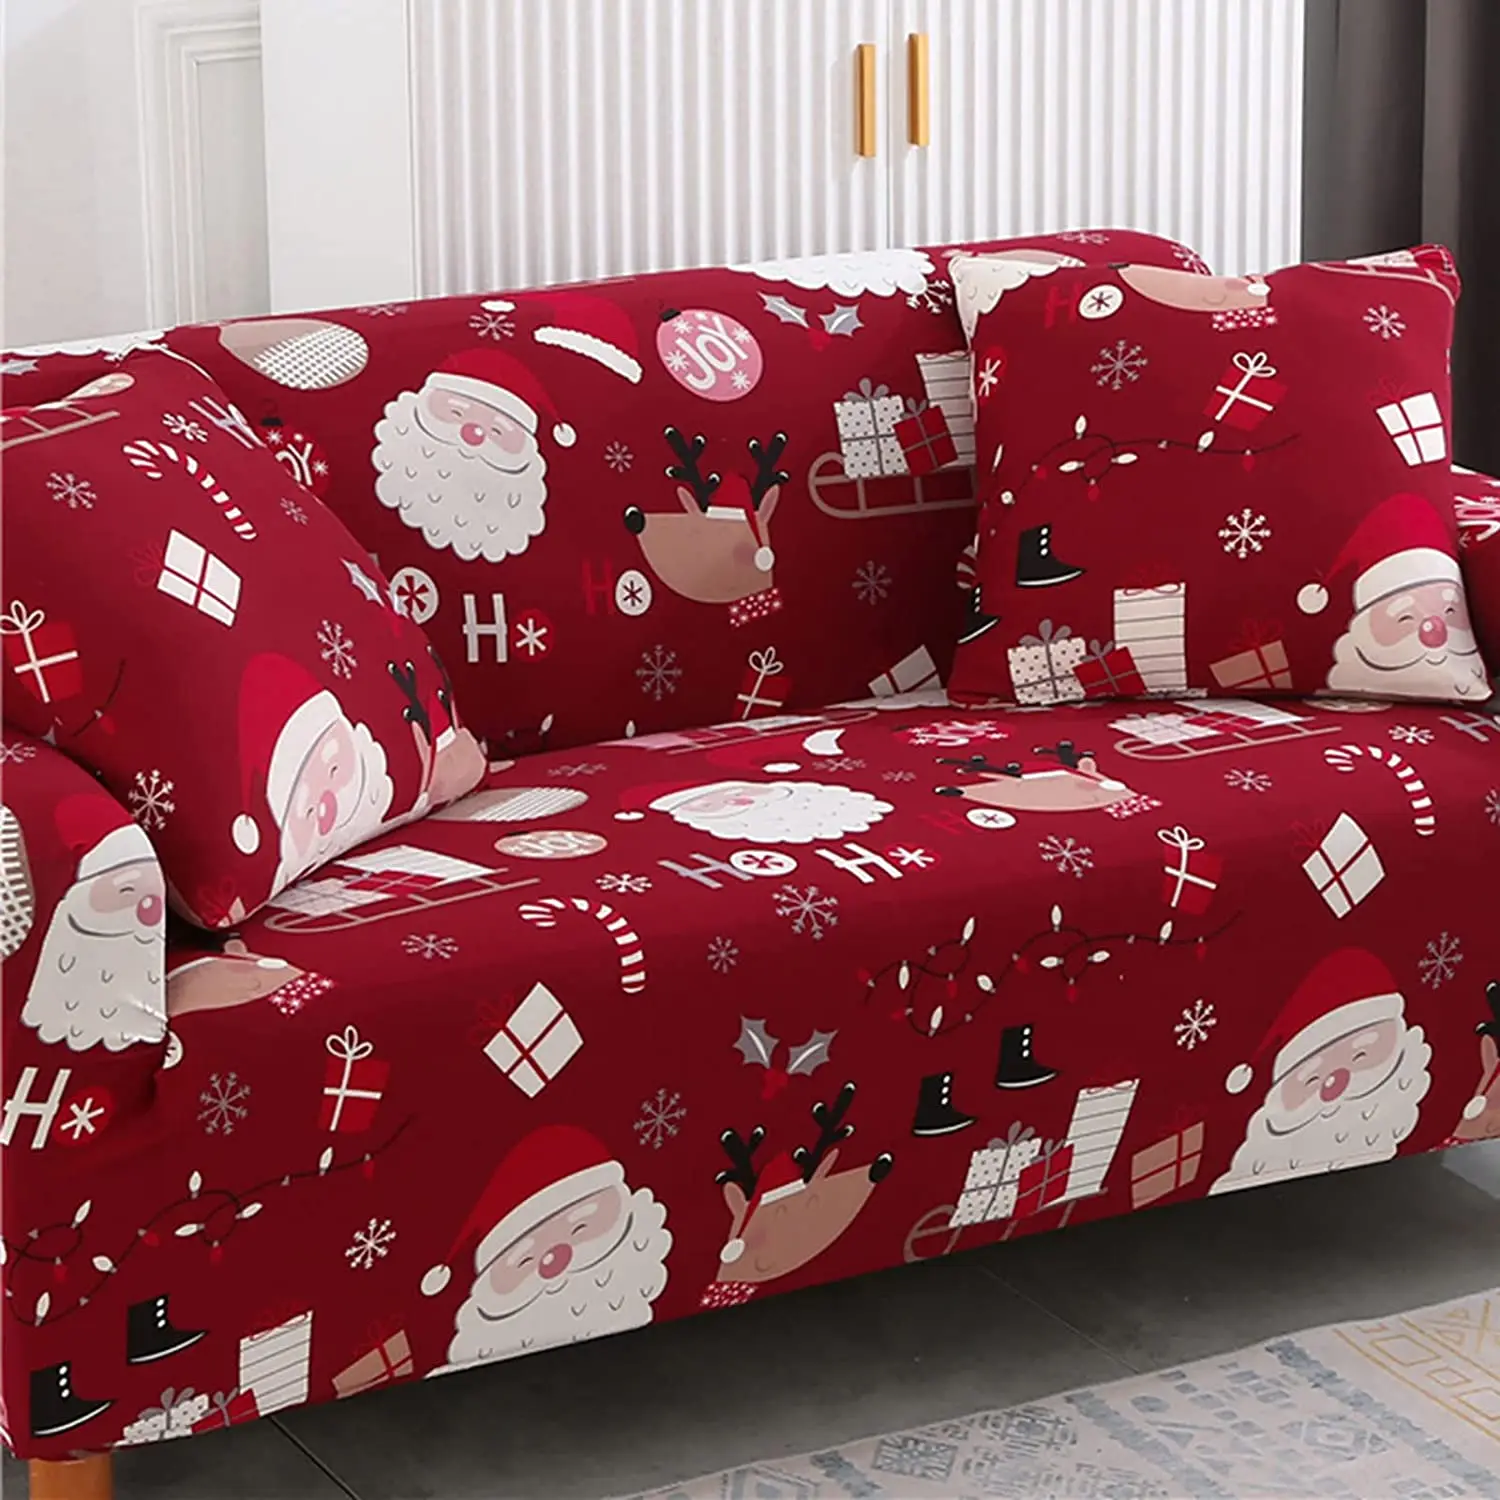 Эластичный чехол для дивана с Санта-Клаусом, снежинкой и пряничнымчеловеком, можно стирать в стиральной машине, праздничный подарок, чехол надиван для гостиной на 1/2/3/4 места